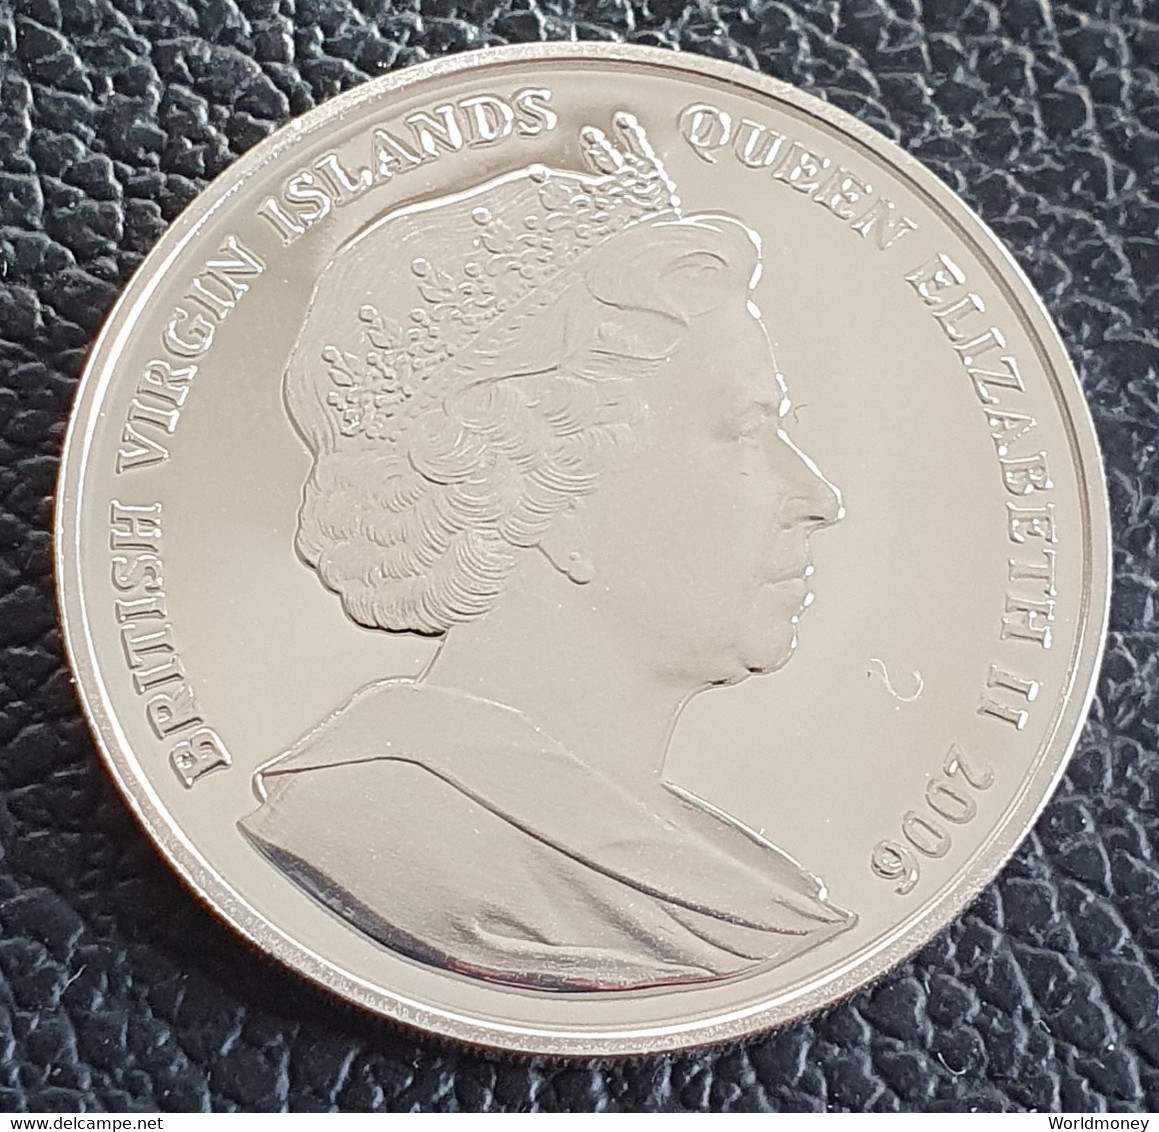 British Virgin Islands 10 Dollars 2006 (PROOF) "Queen Victoria"  Silver - British Virgin Islands